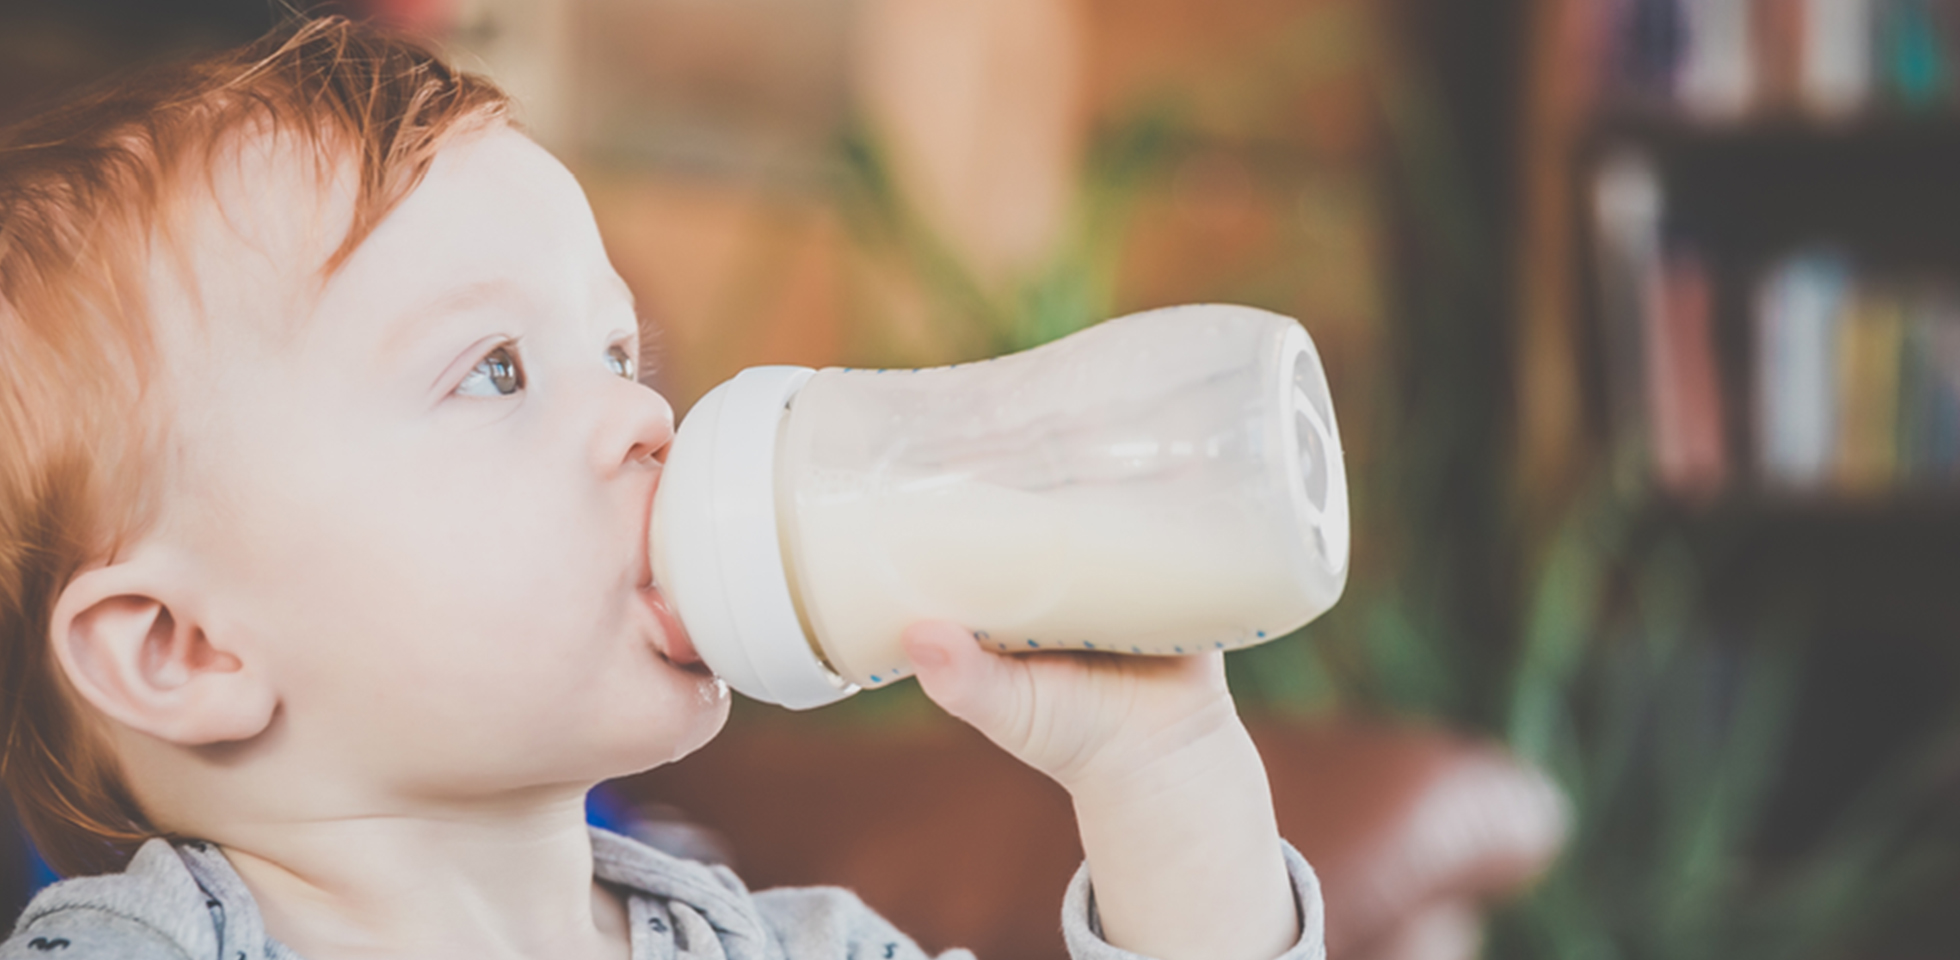 H Milch Oder Frischmilch Für Baby - Pregnant Health Tips